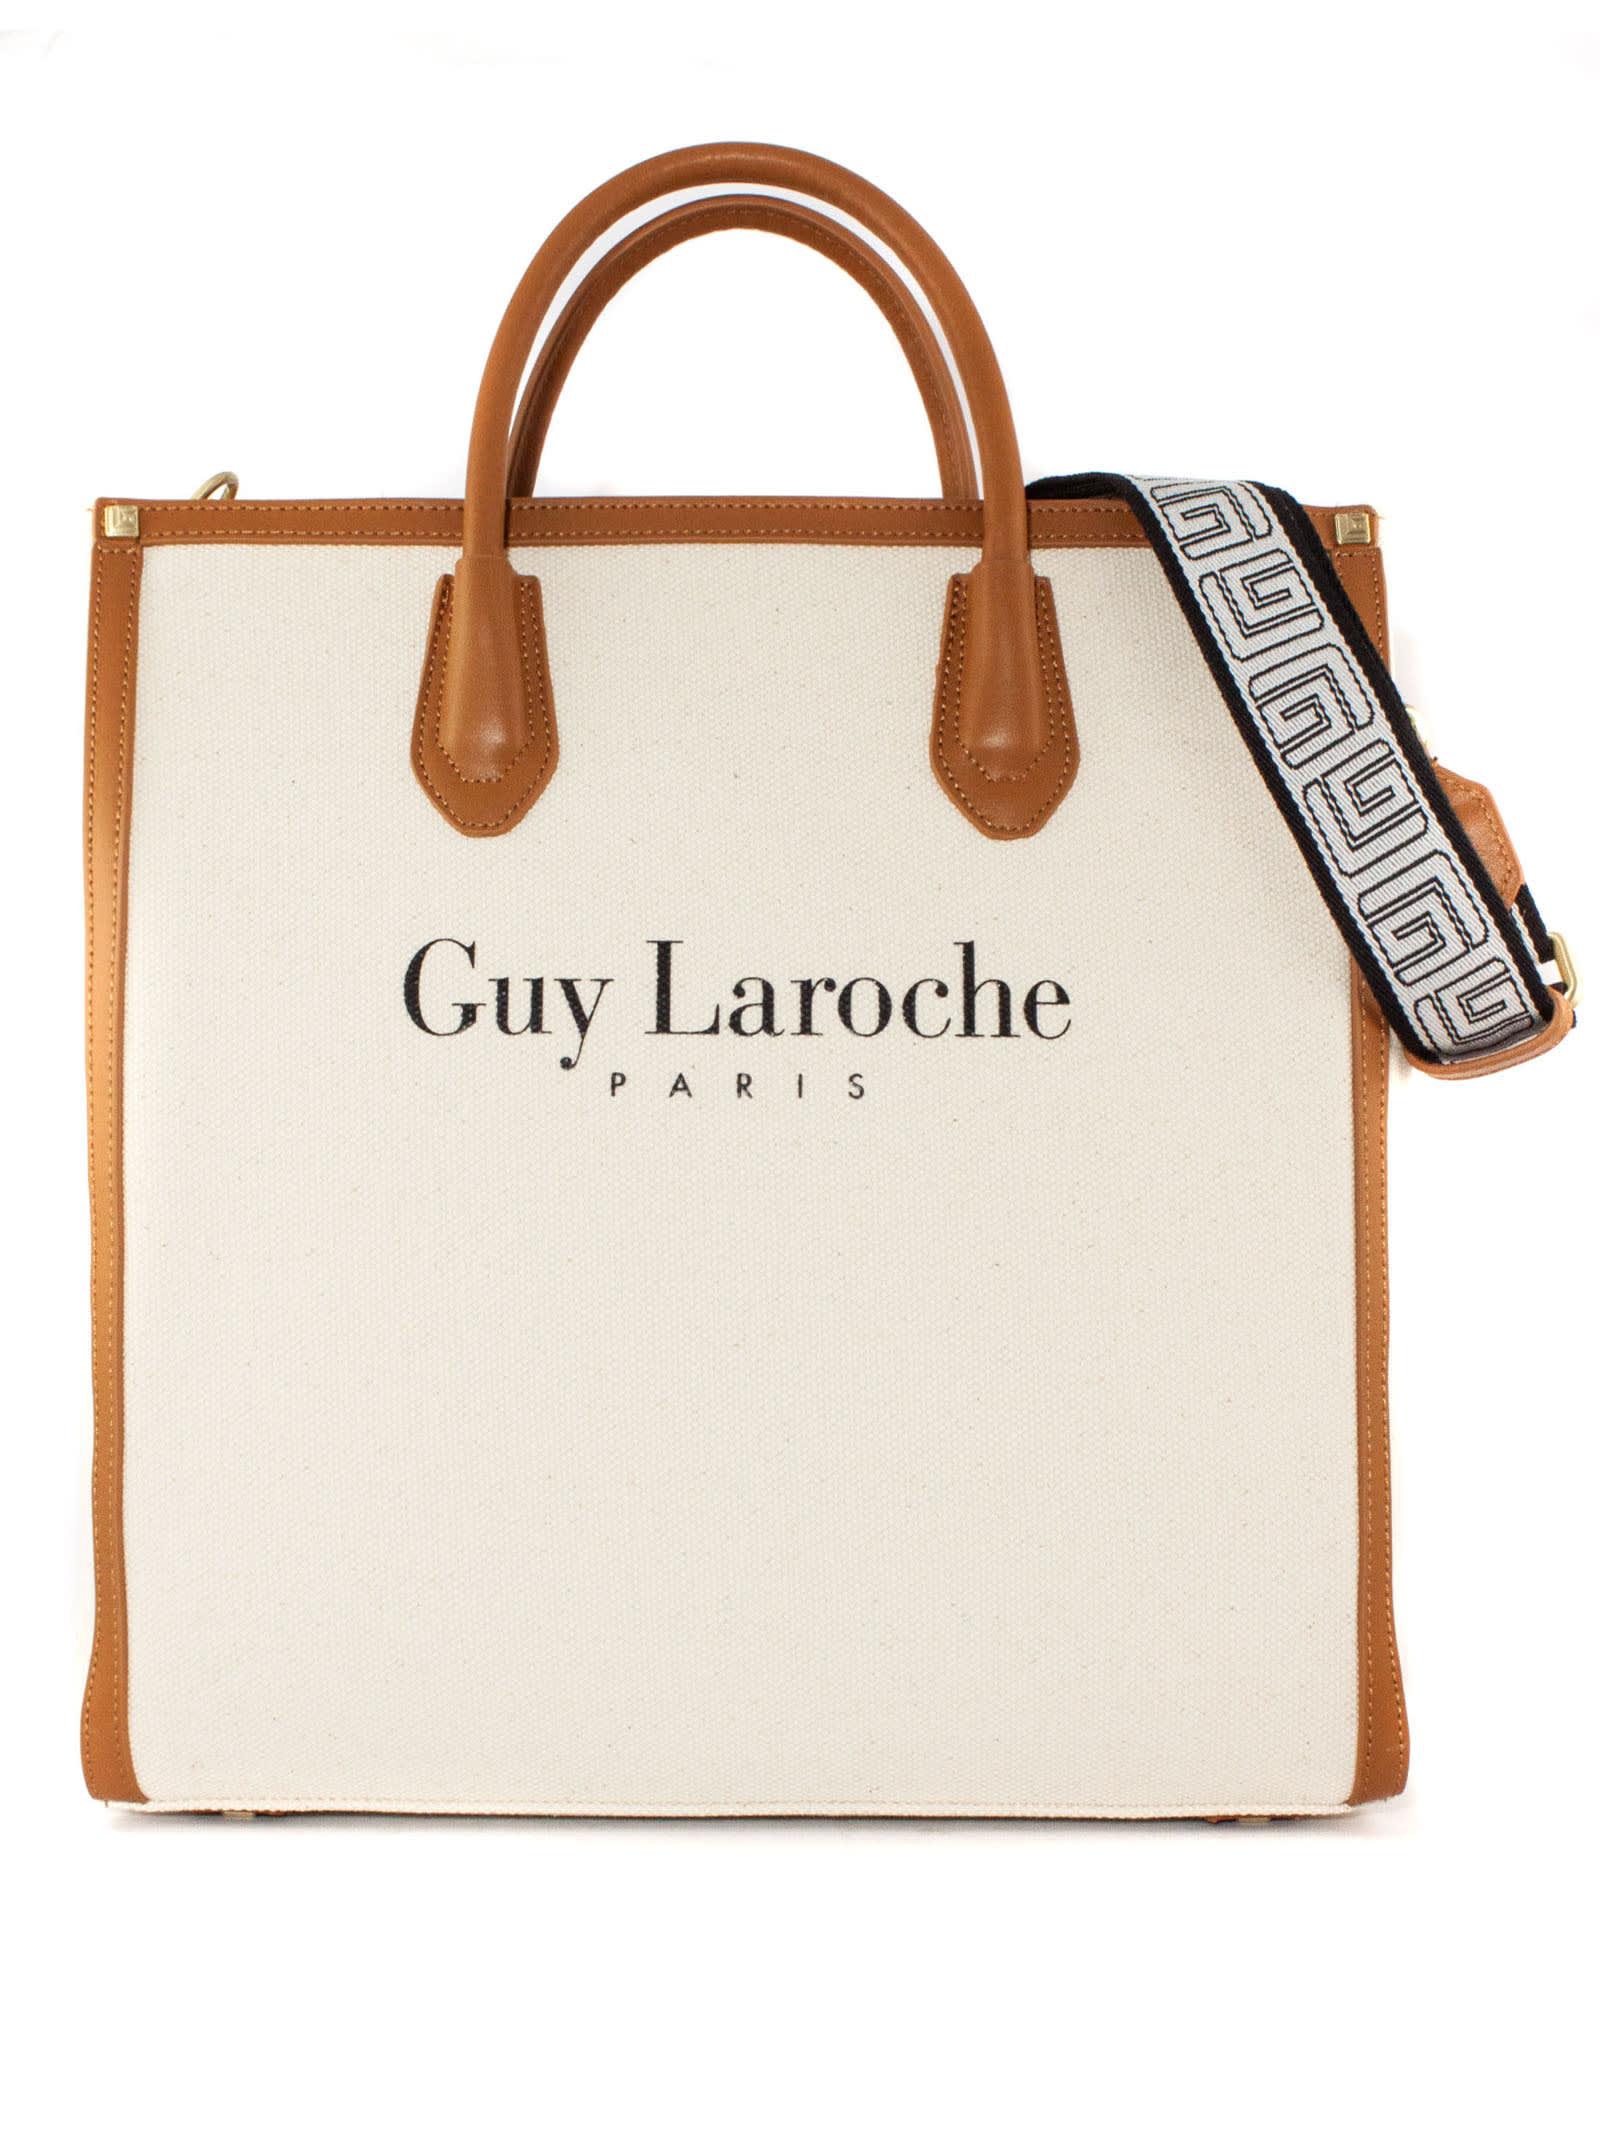 Guy Laroche, Bags, Guy Laroche Leather Satchel Bag